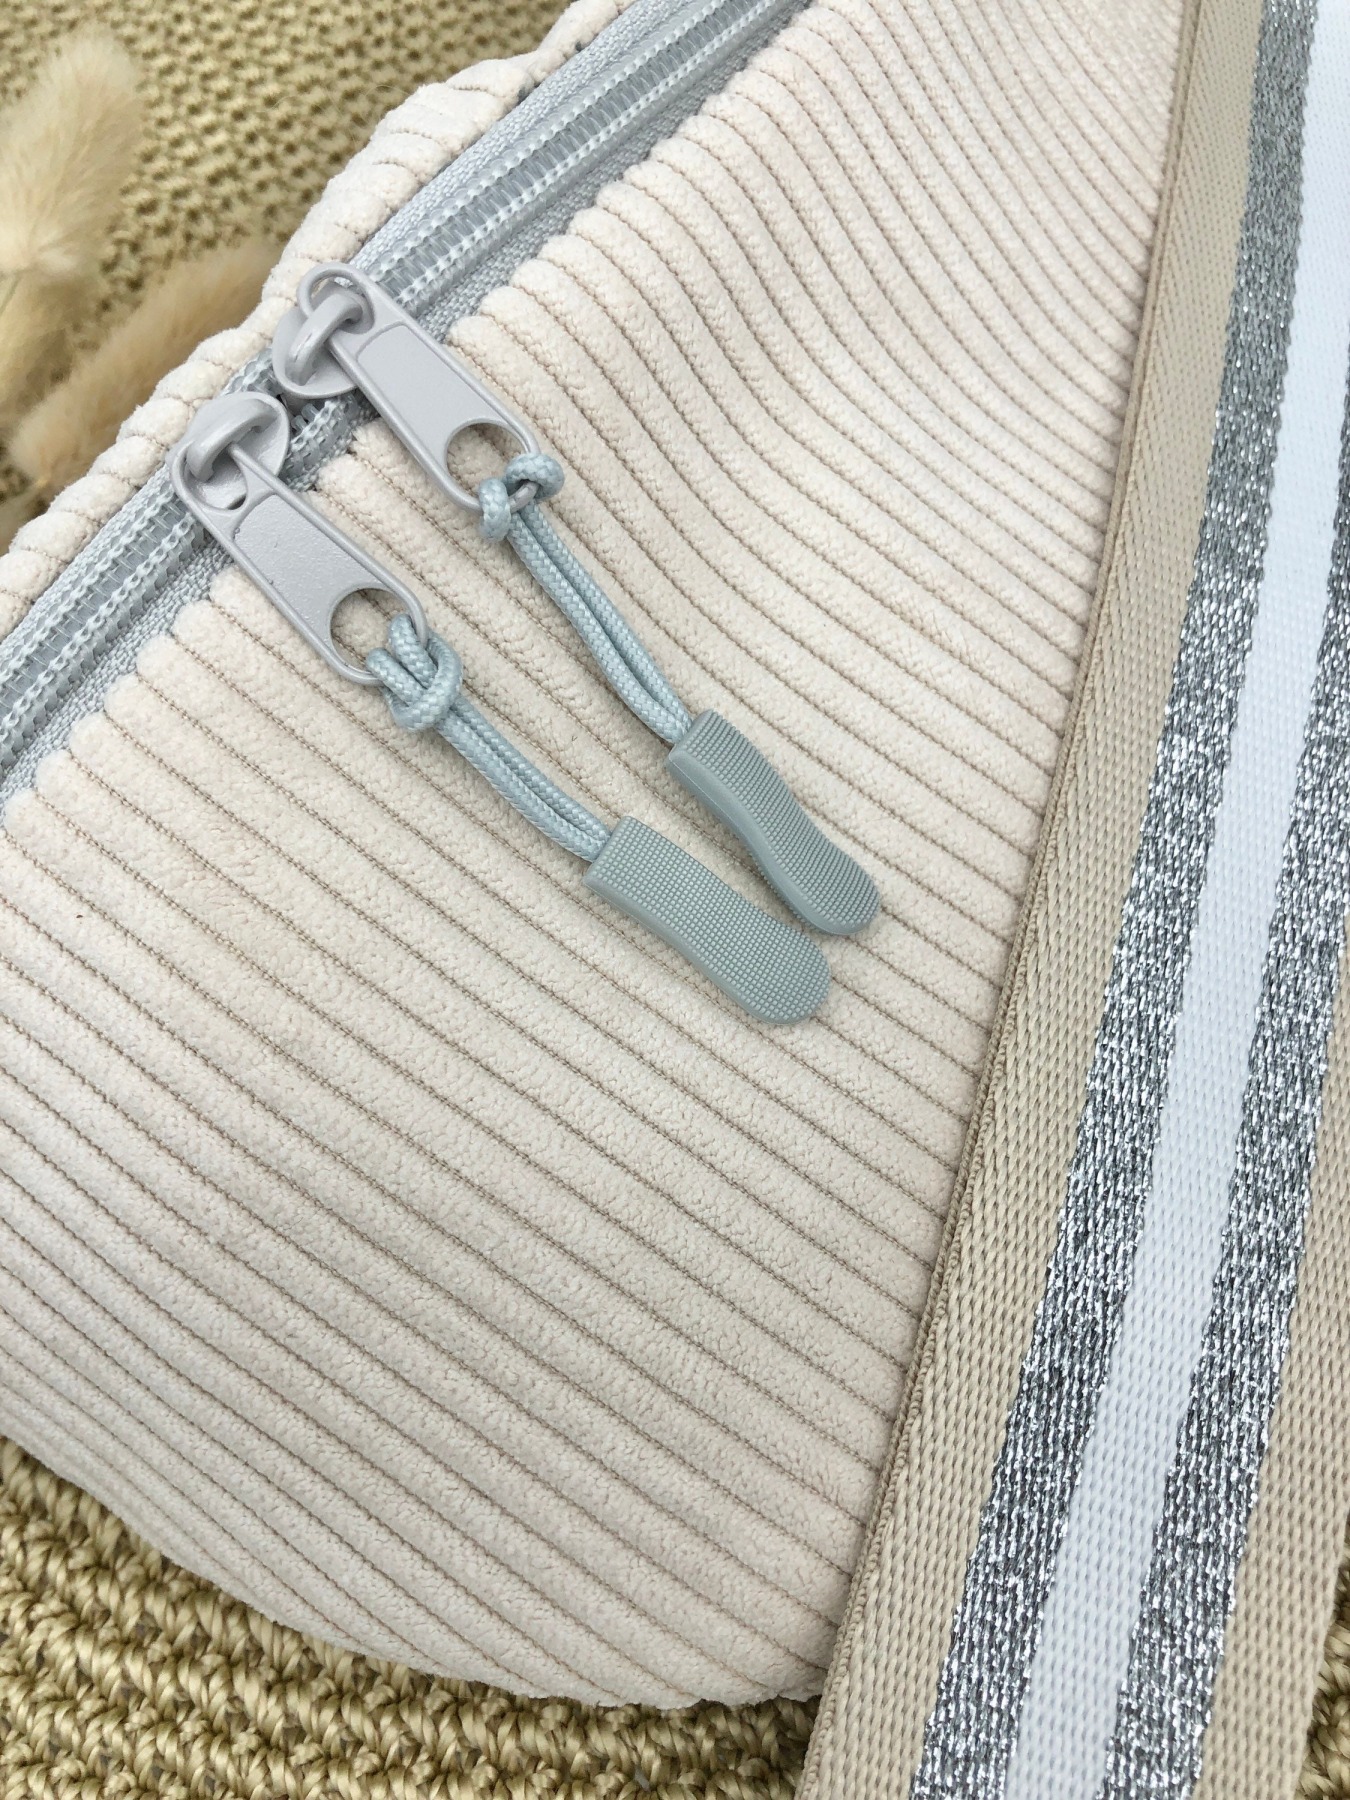 Bauchtasche Crossbag Cord cremeweiß mit Taschengurt in beige weiß silber Tasche Hipbag leicht und